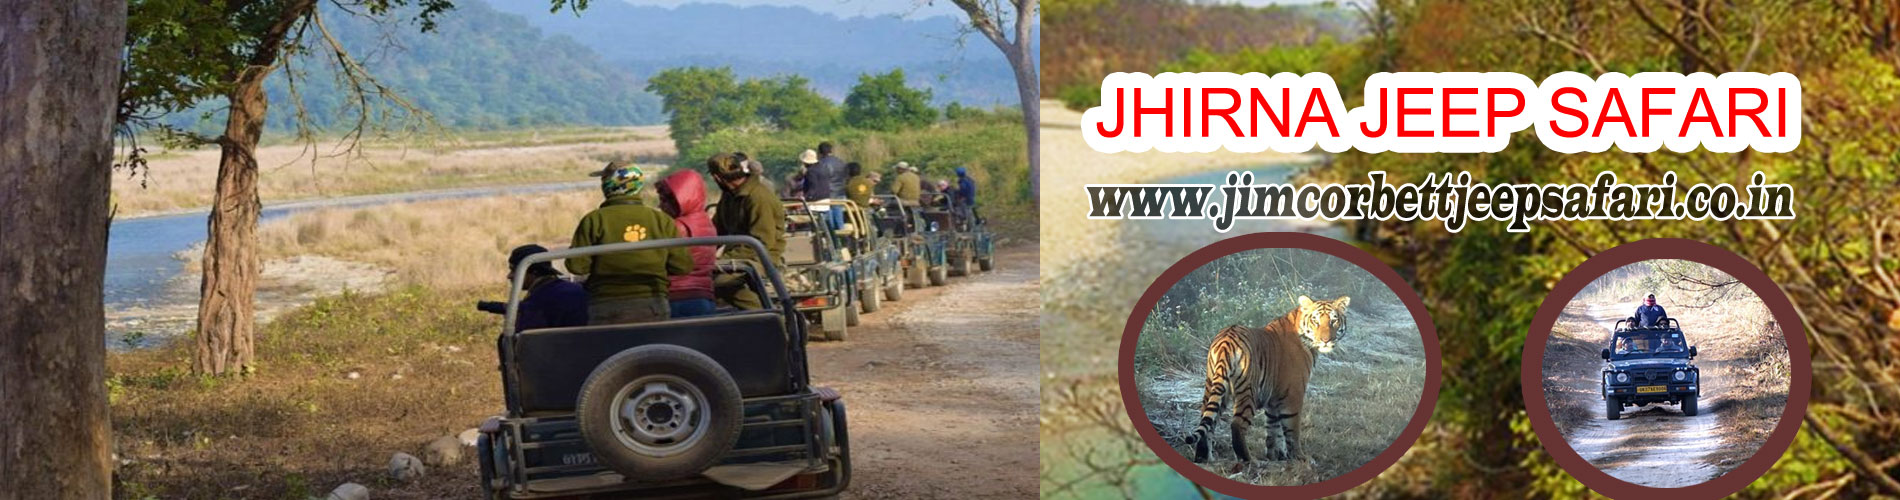 Jhirna Jeep Safari Zone Jim Corbett